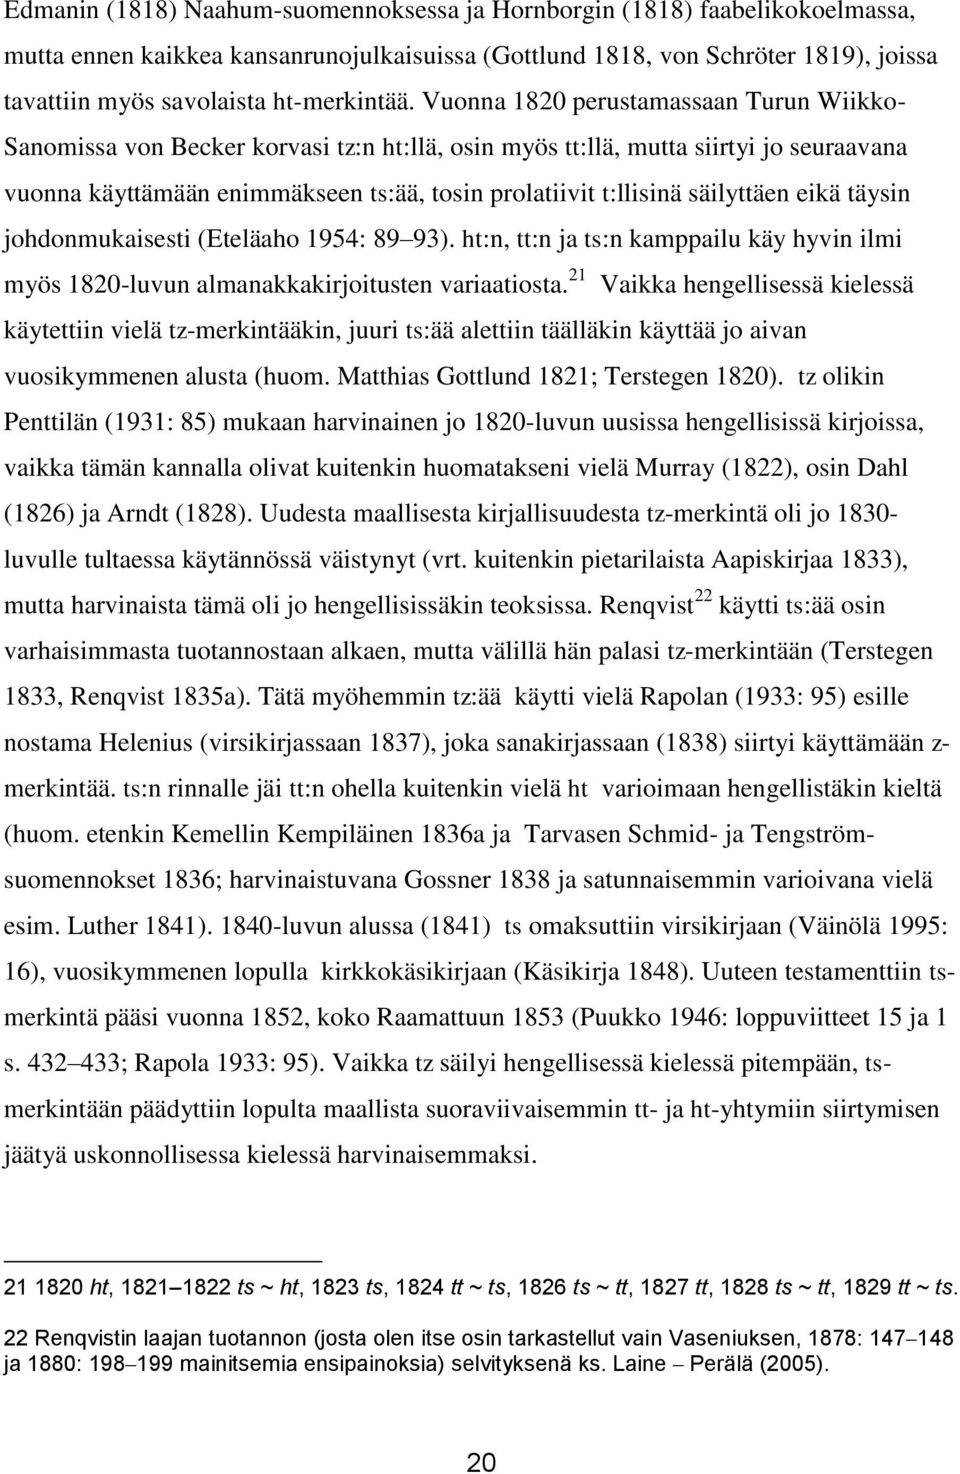 Vuonna 1820 perustamassaan Turun Wiikko- Sanomissa von Becker korvasi tz:n ht:llä, osin myös tt:llä, mutta siirtyi jo seuraavana vuonna käyttämään enimmäkseen ts:ää, tosin prolatiivit t:llisinä